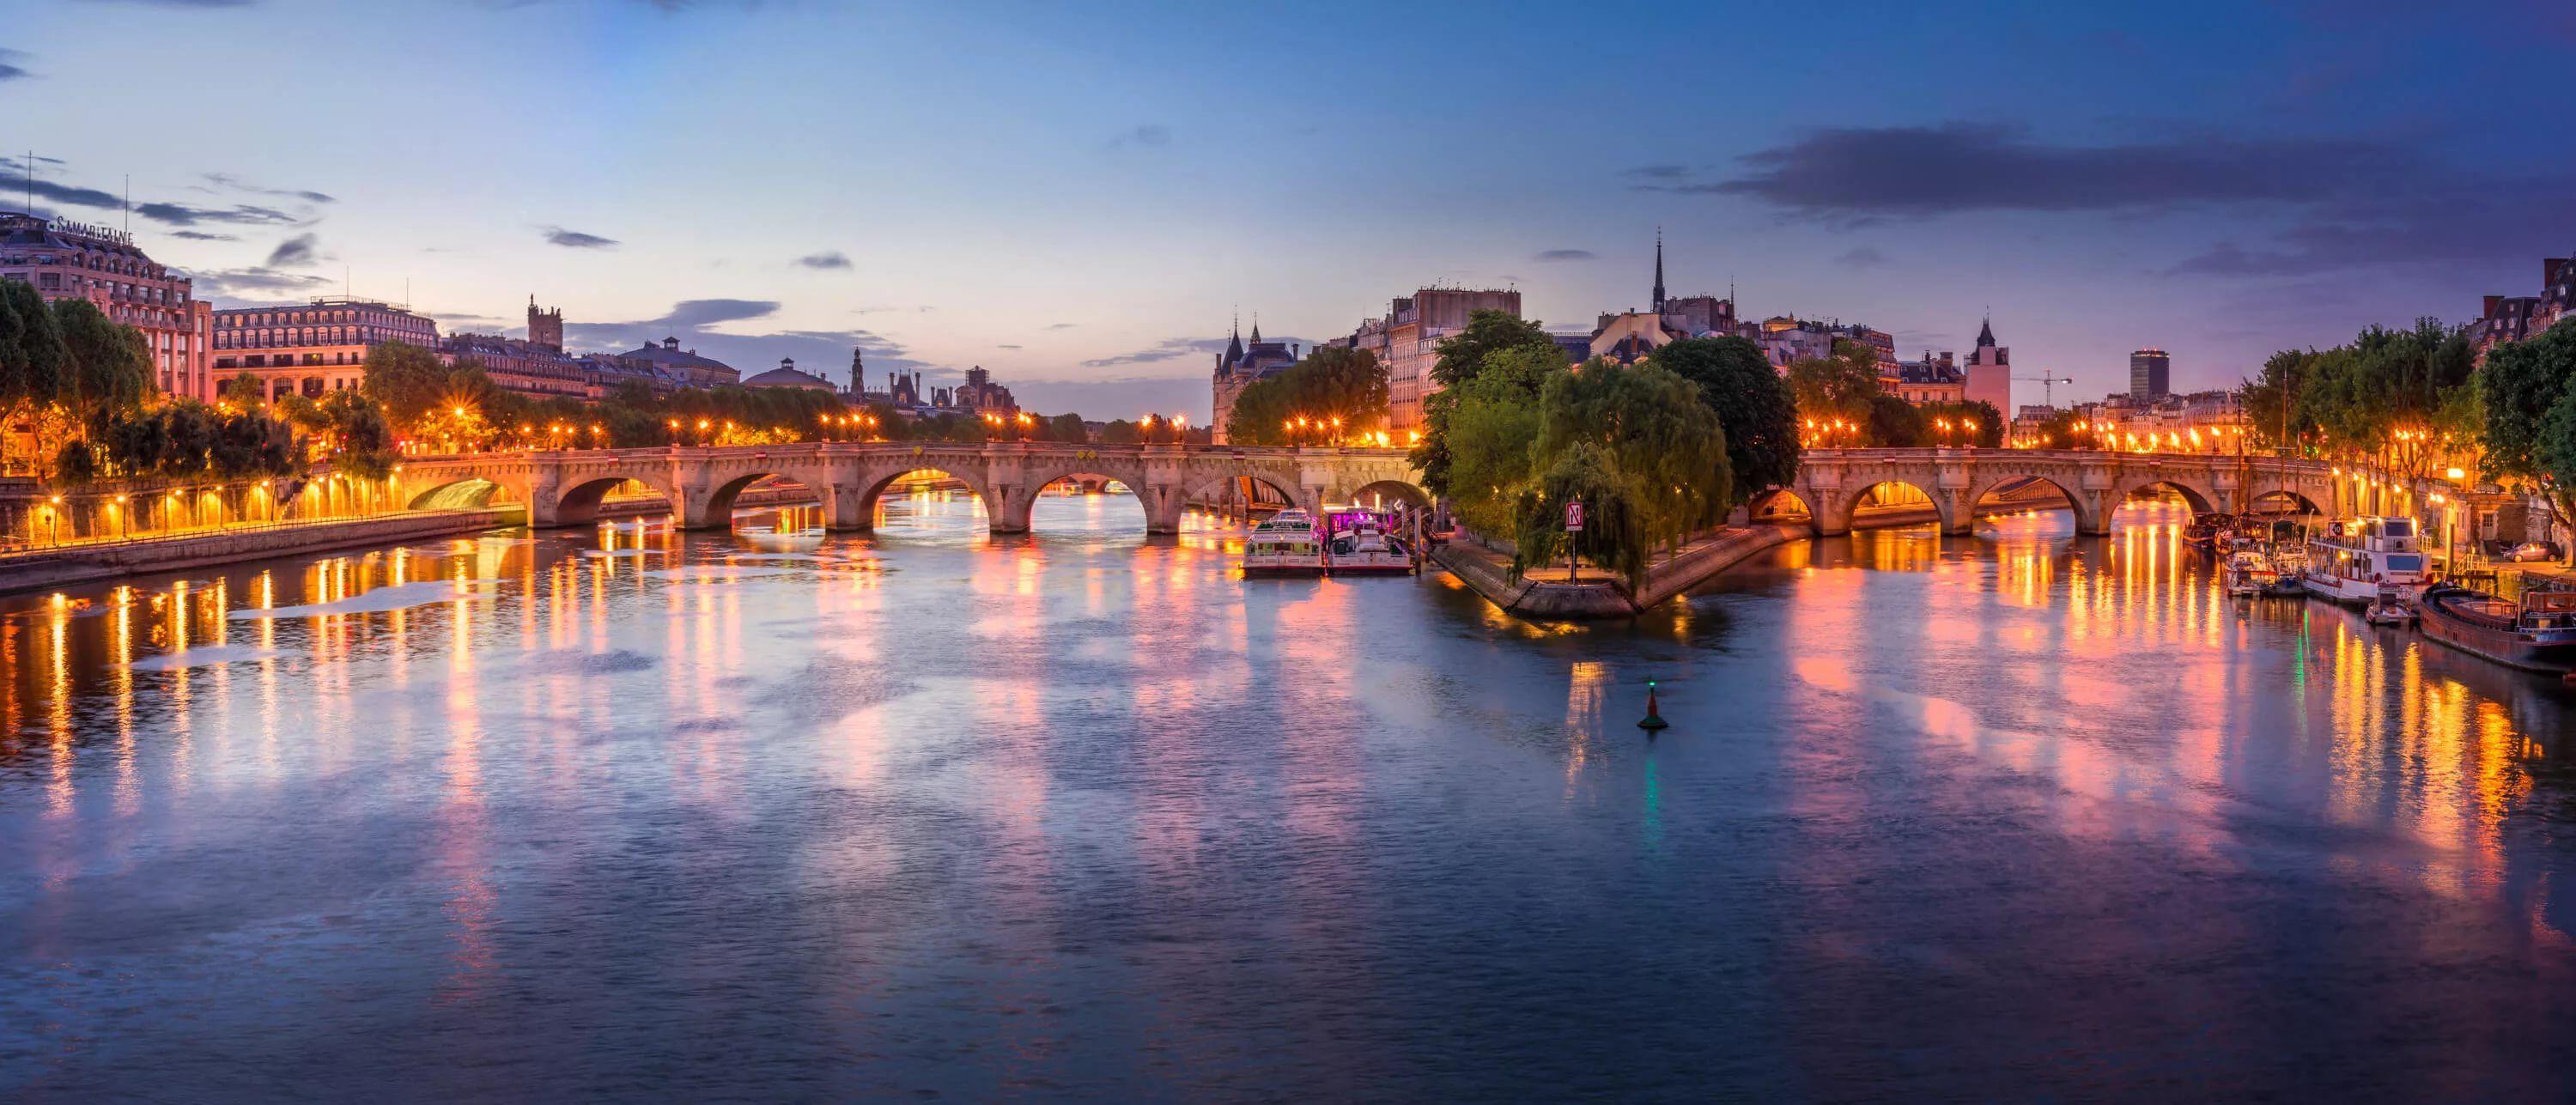 Pont Neuf Toulouse HD Wallpaper free